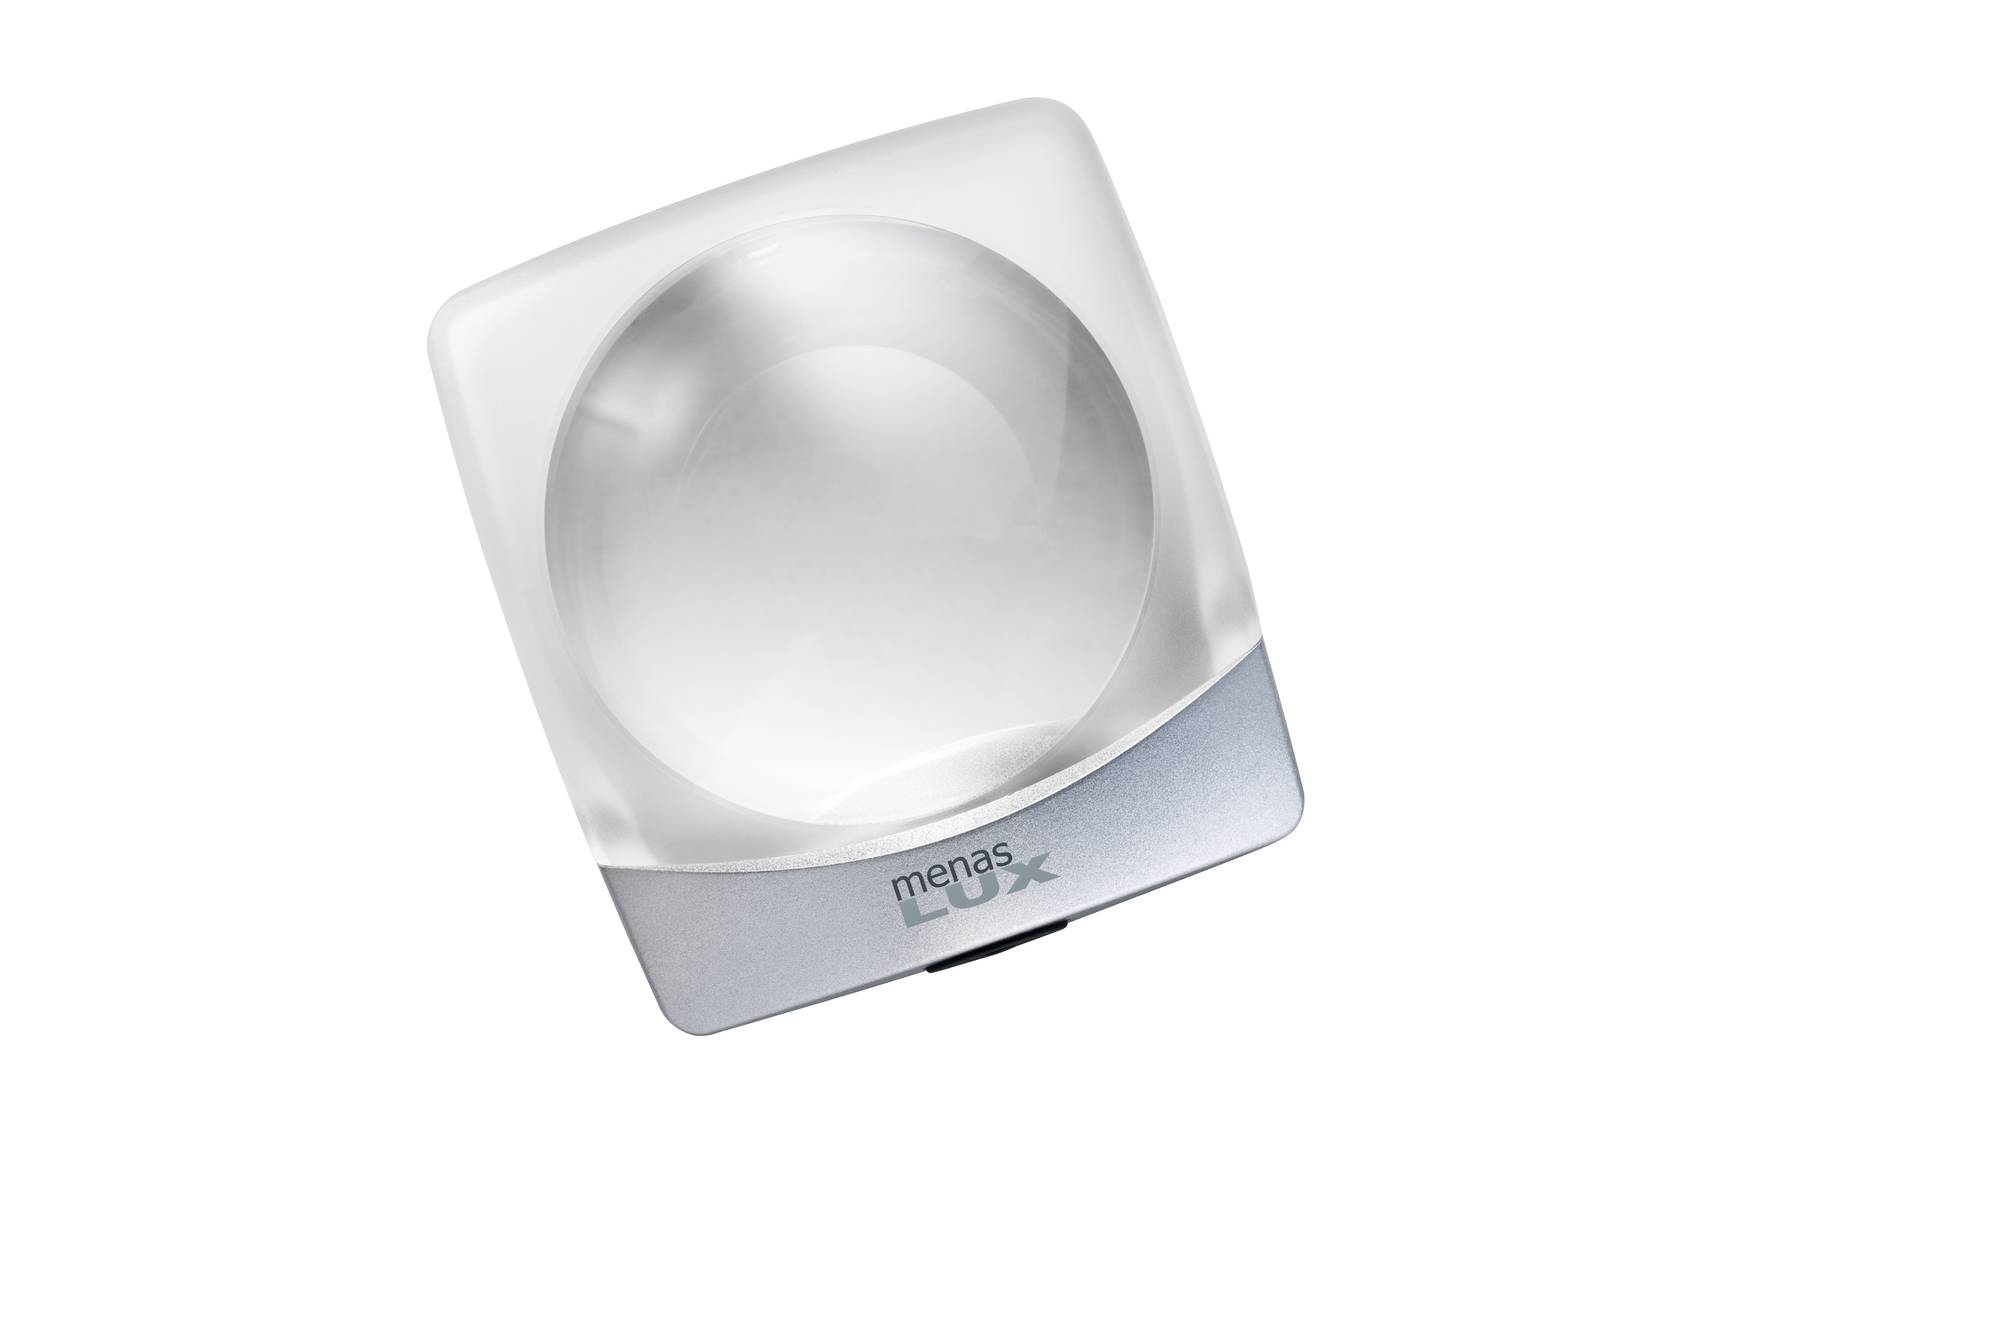 Menas Lux Dome Magnifier 2